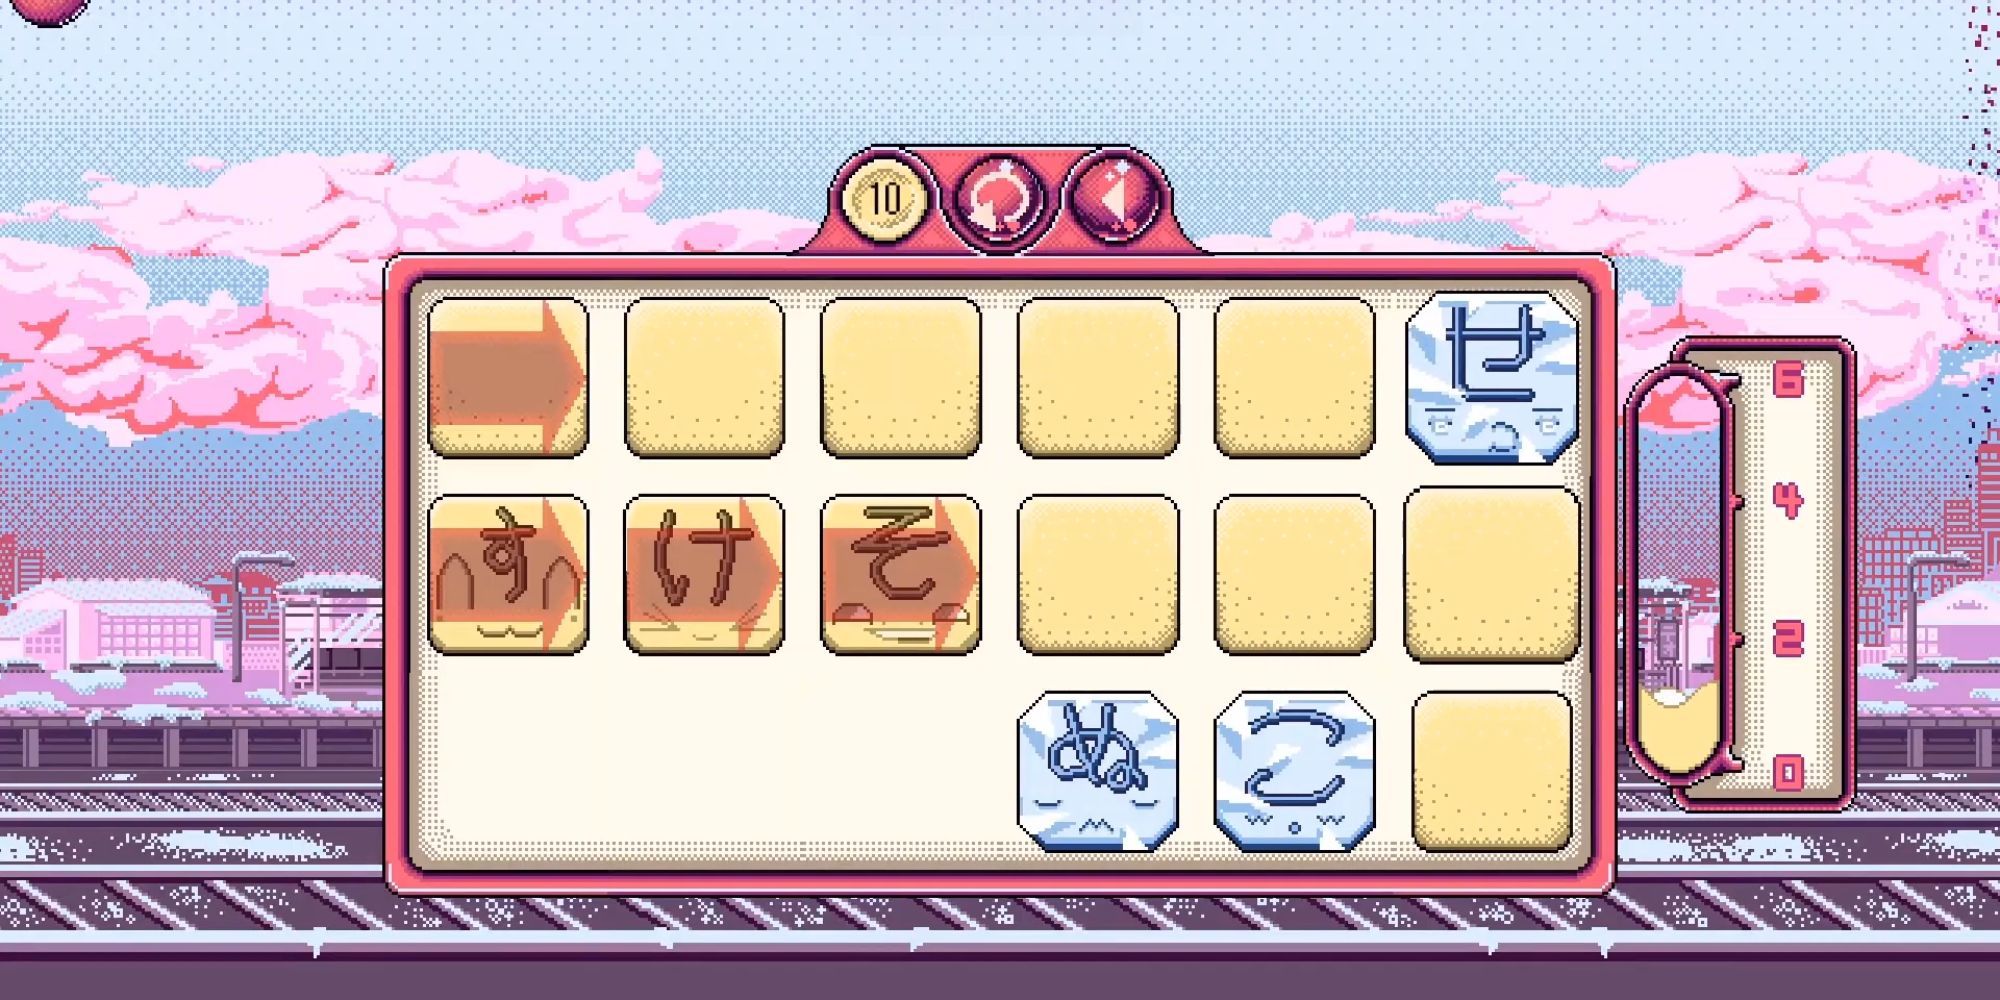 Ein Spielbildschirm mit rosa Wolken im Hintergrund, auf dem Kacheln mit japanischen Schriftzeichen zu sehen sind, die verschoben werden können.